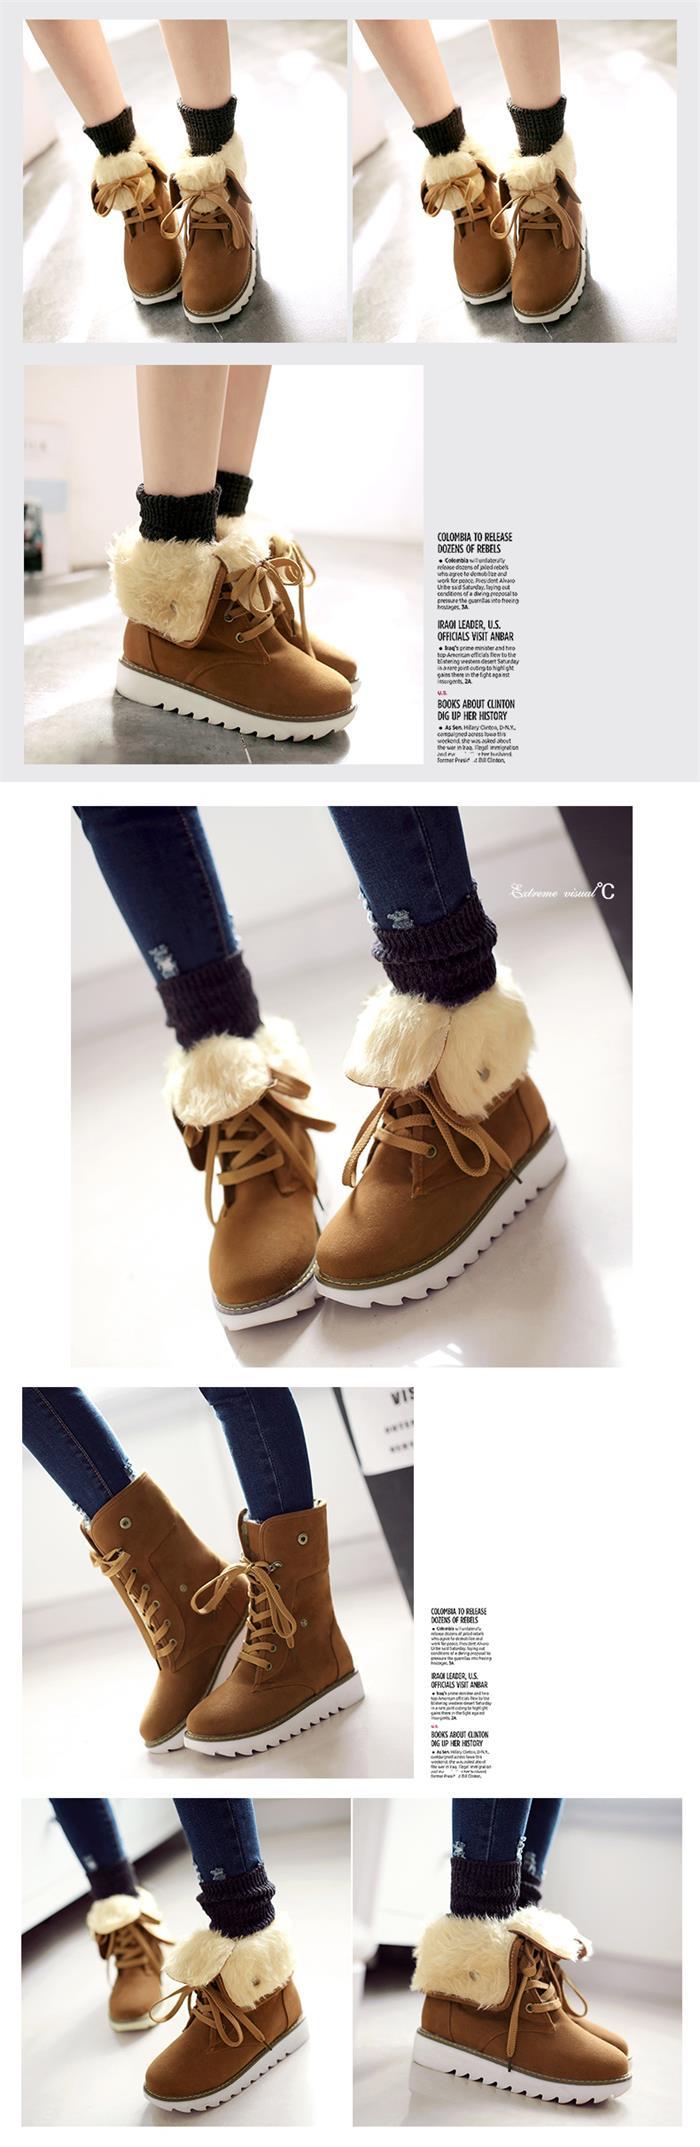 韩版流苏雪地靴平底豆豆鞋短靴女鞋冬季女加绒棉鞋毛毛保暖面包鞋